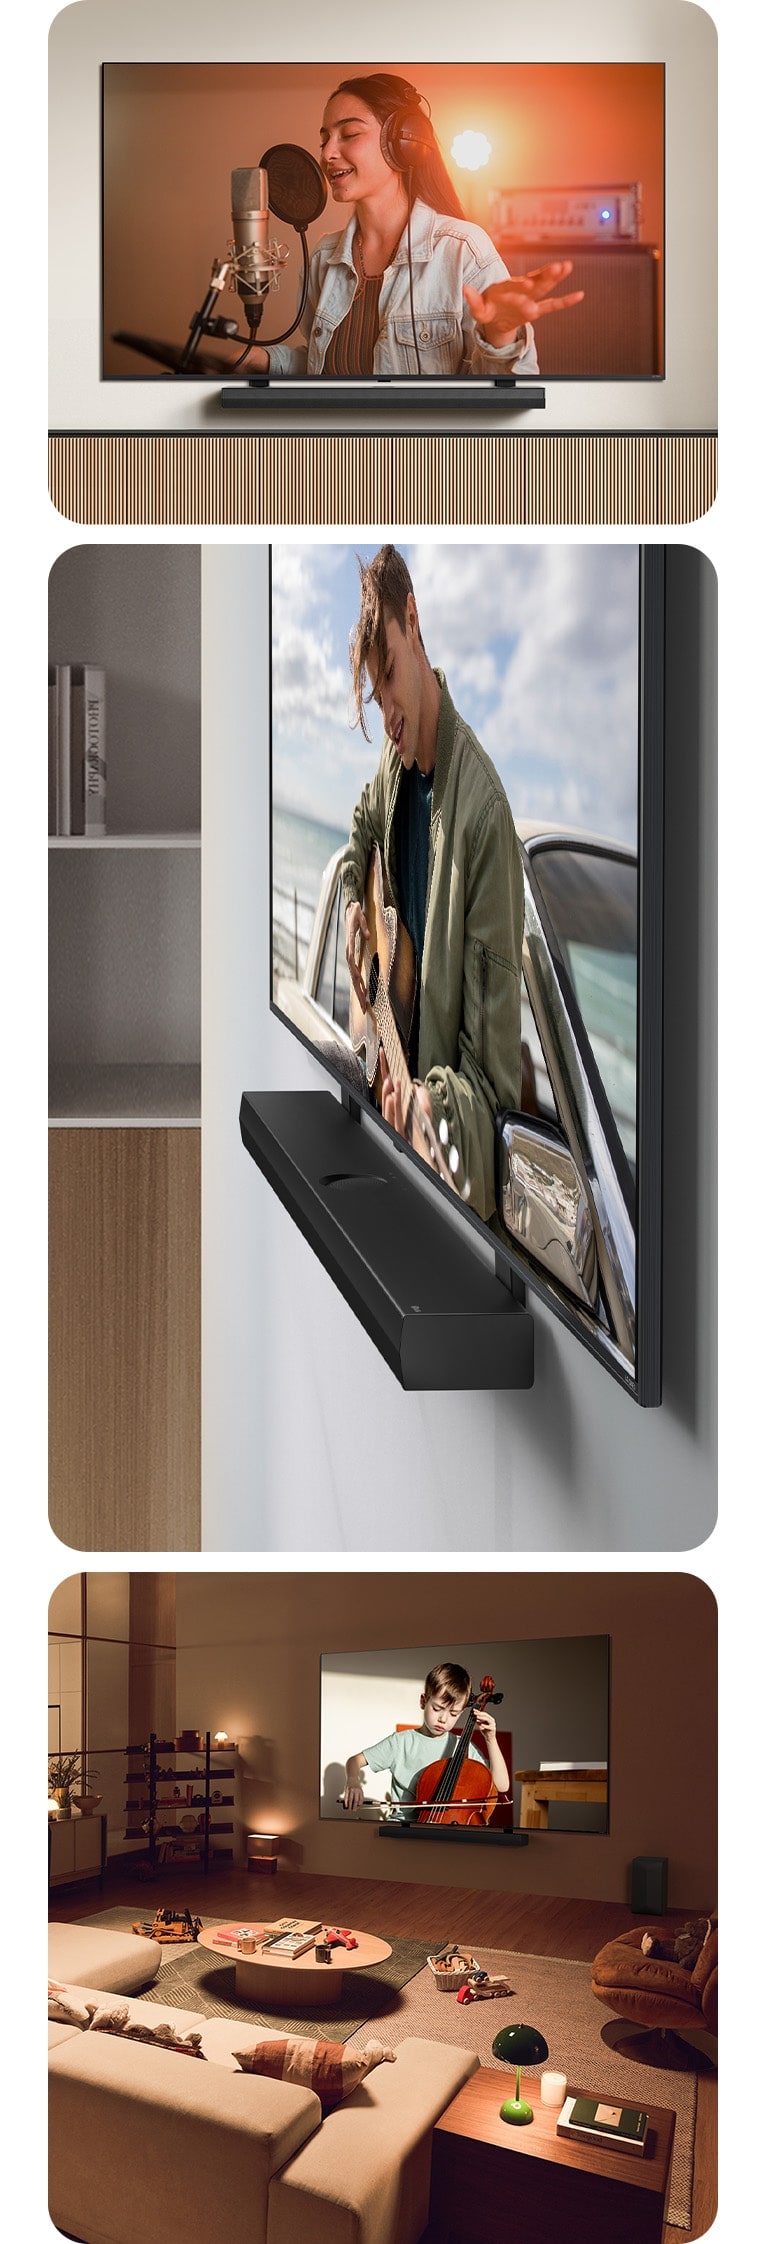 LG Soundbar i LG QNED TV na ścianie z uchwytem QNED Matching w szarej i drewnianej przestrzeni mieszkalnej pod kątem, gdzie LG QNED TV wyświetla mężczyznę grającego na gitarze.  LG Soundbar i LG QNED TV na tle kremowej ściany z uchwytem QNED dopasowanym do telewizora. Telewizor odtwarza film przedstawiający kobietę śpiewającą w studiu nagraniowym. Pod telewizorem znajduje się nowoczesny, geometryczny drewniany stojak.   LG Soundbar i LG QNED TV na ścianie z uchwytem QNED dopasowanym do telewizora w przytulnym i słabo oświetlonym salonie z zabawkami dla dzieci. Telewizor odtwarza wideo małego chłopca grającego na wiolonczeli.